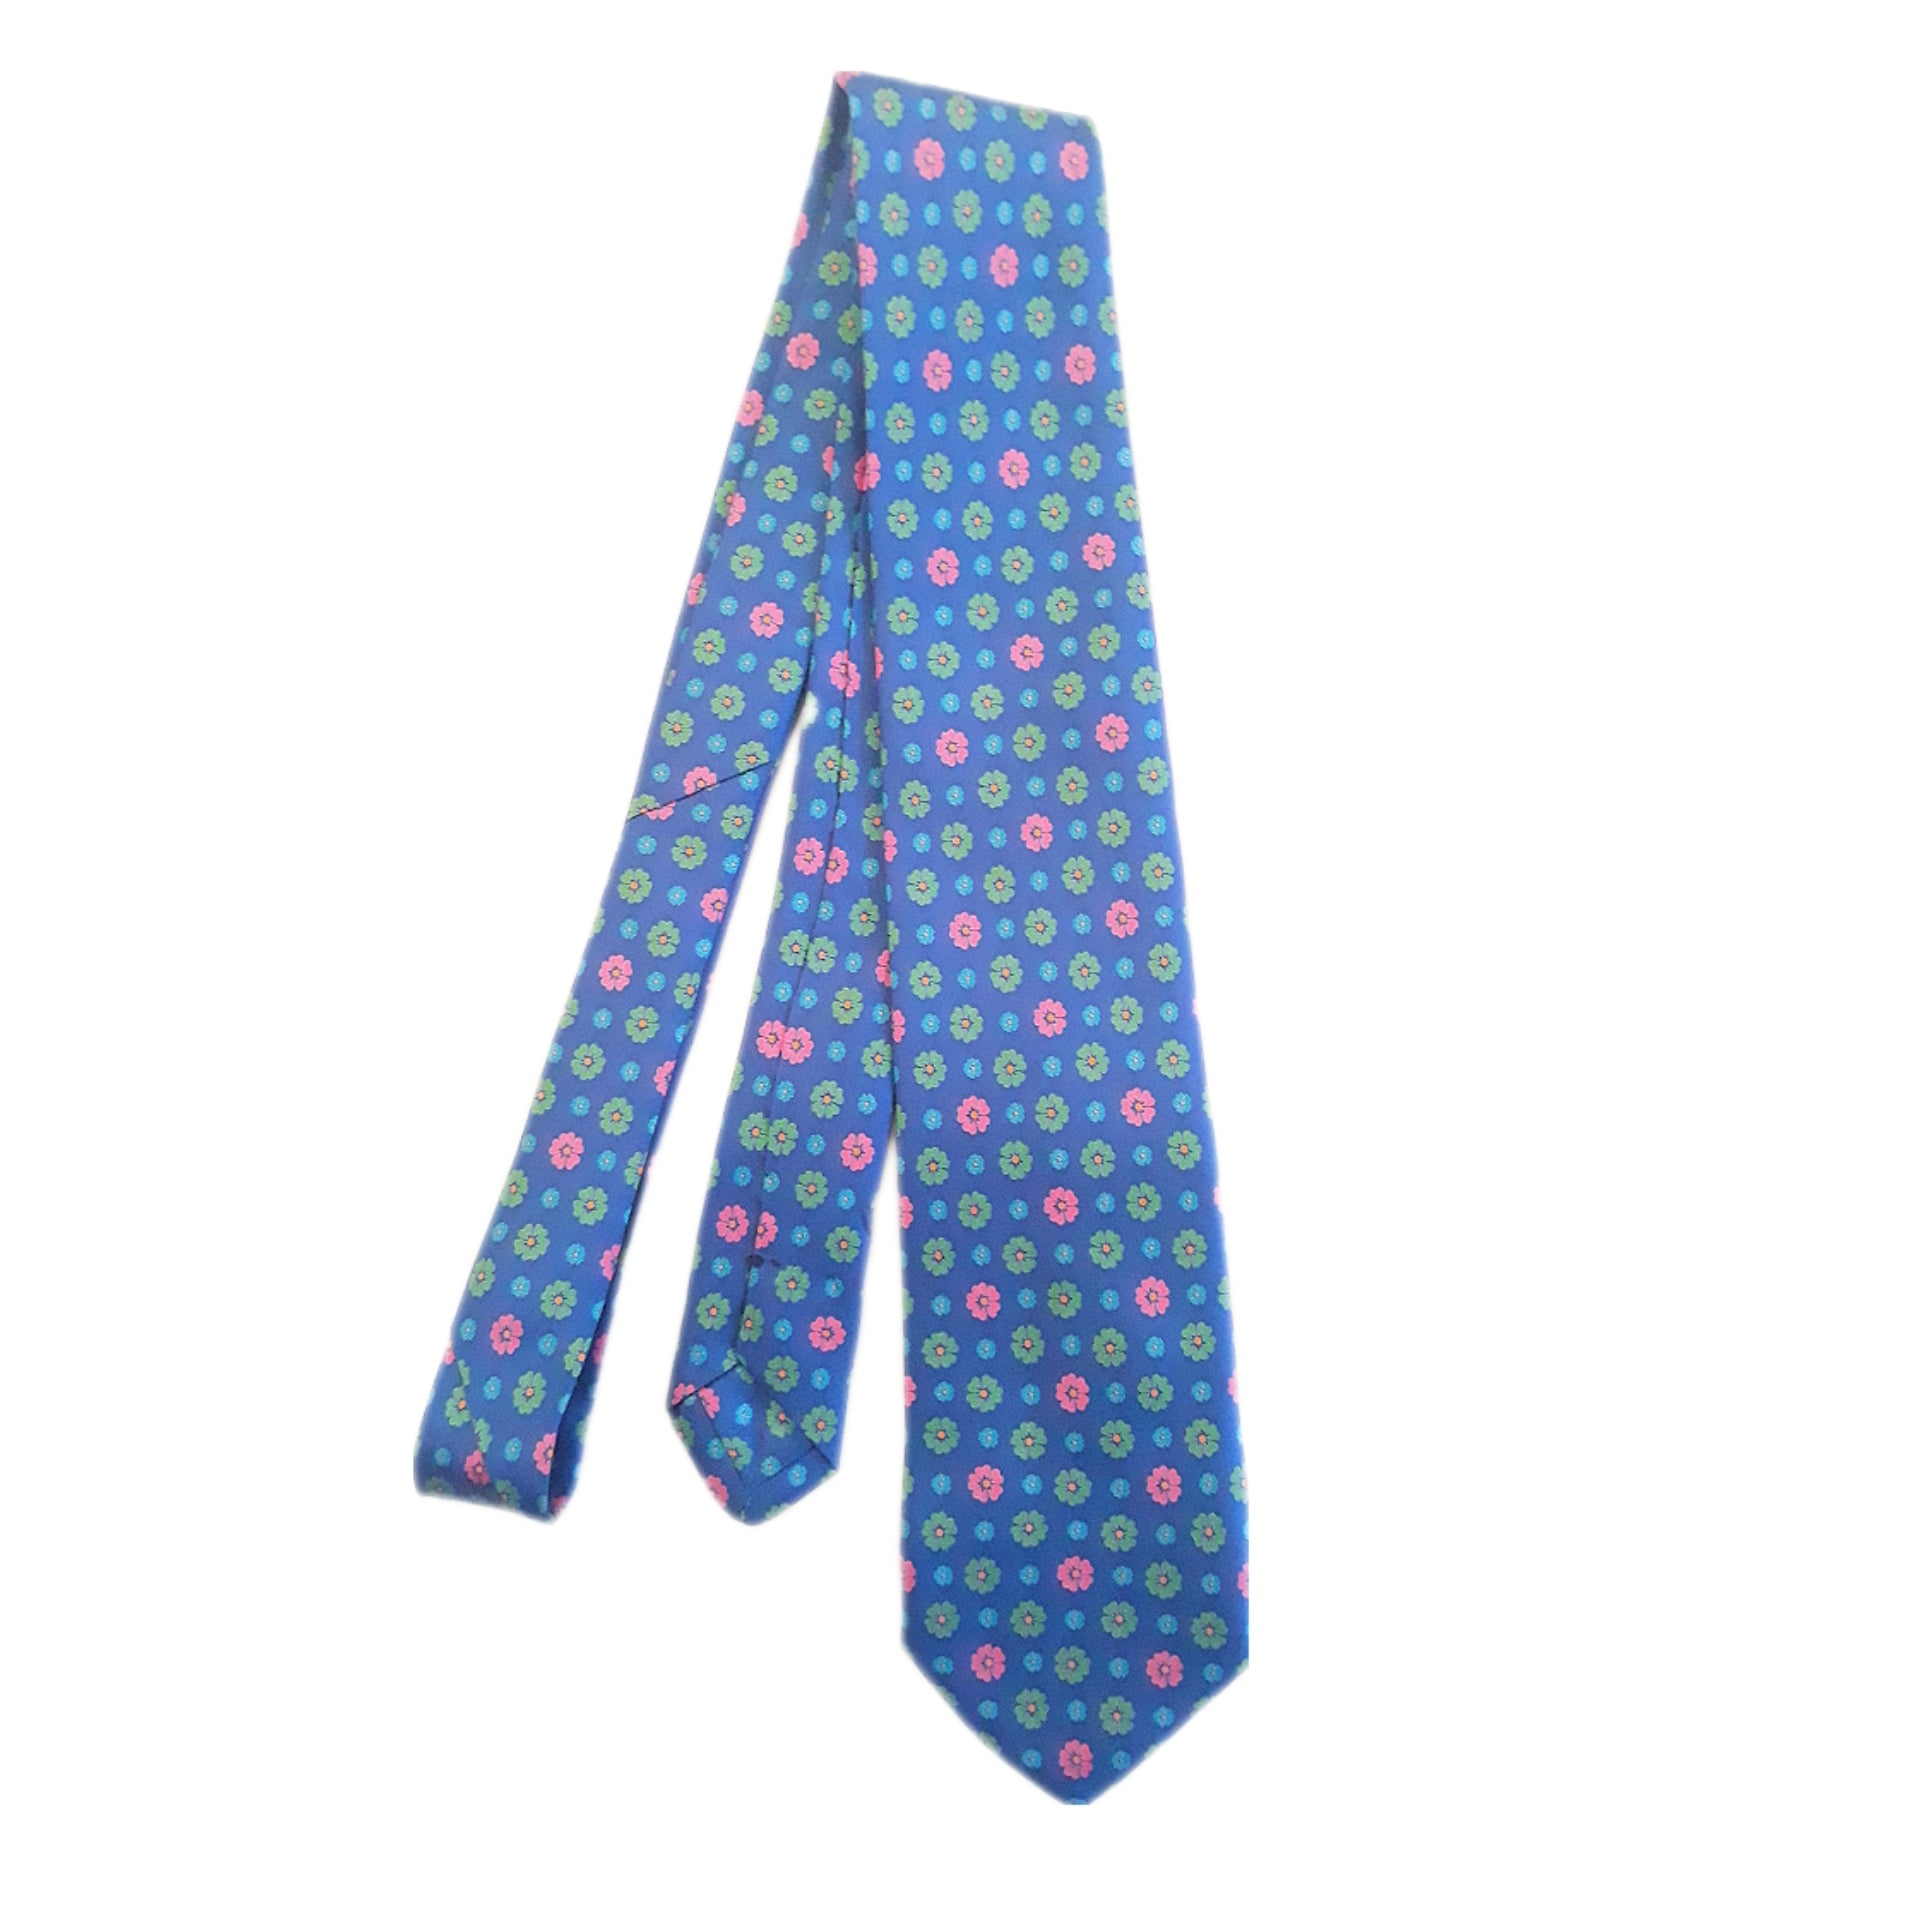 cravatta blue a fantasia con i fiori 3 pieghe di pura seta fatta a mano